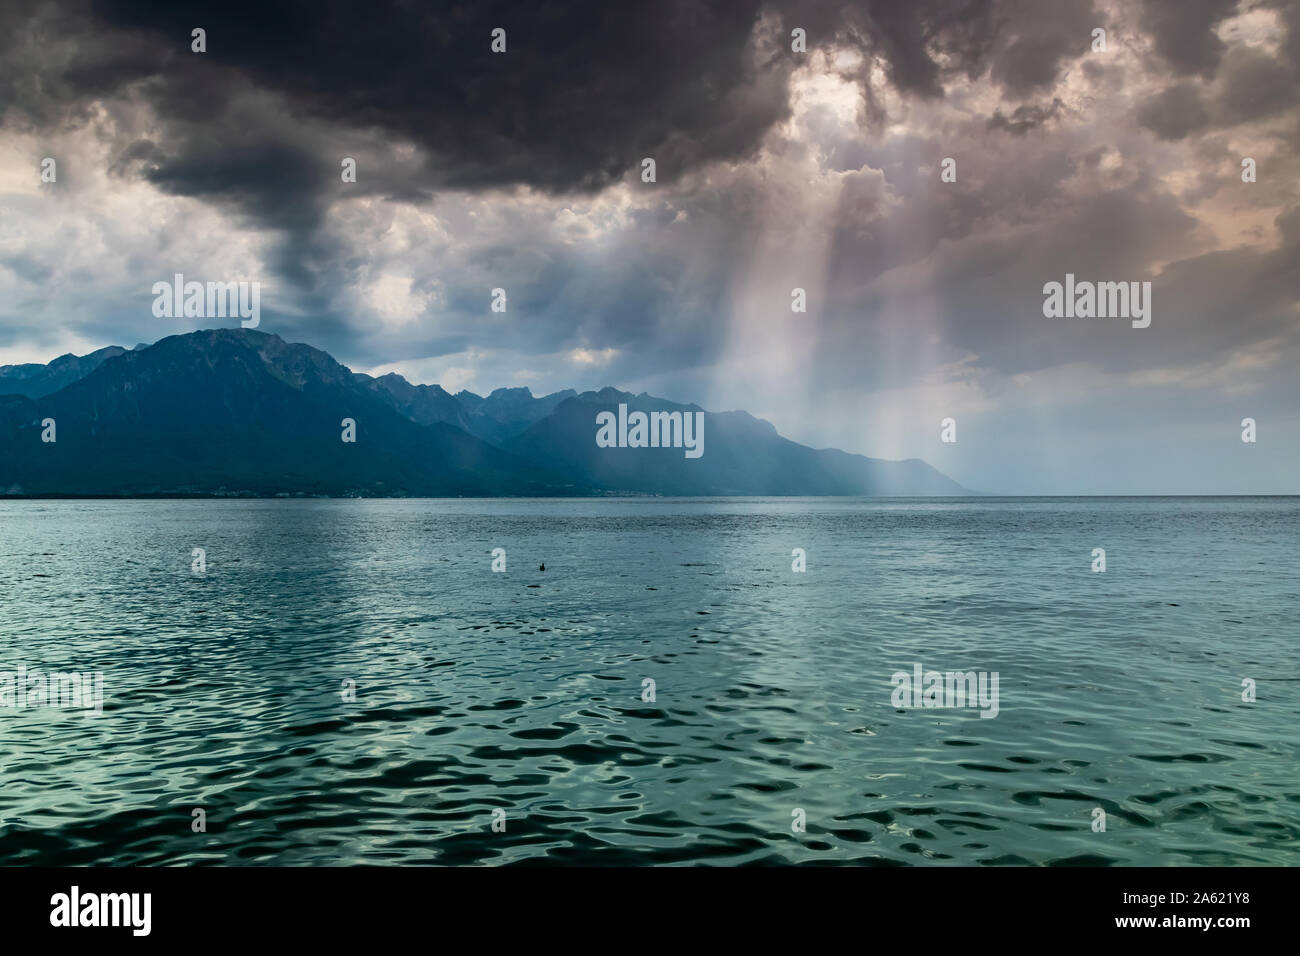 Paysage de montagnes des Alpes, le lac Léman,nuages sombres avec les rayons du soleil avant la pluie.cliché pris à partir de la rive du lac à Montreux, Suisse. Banque D'Images